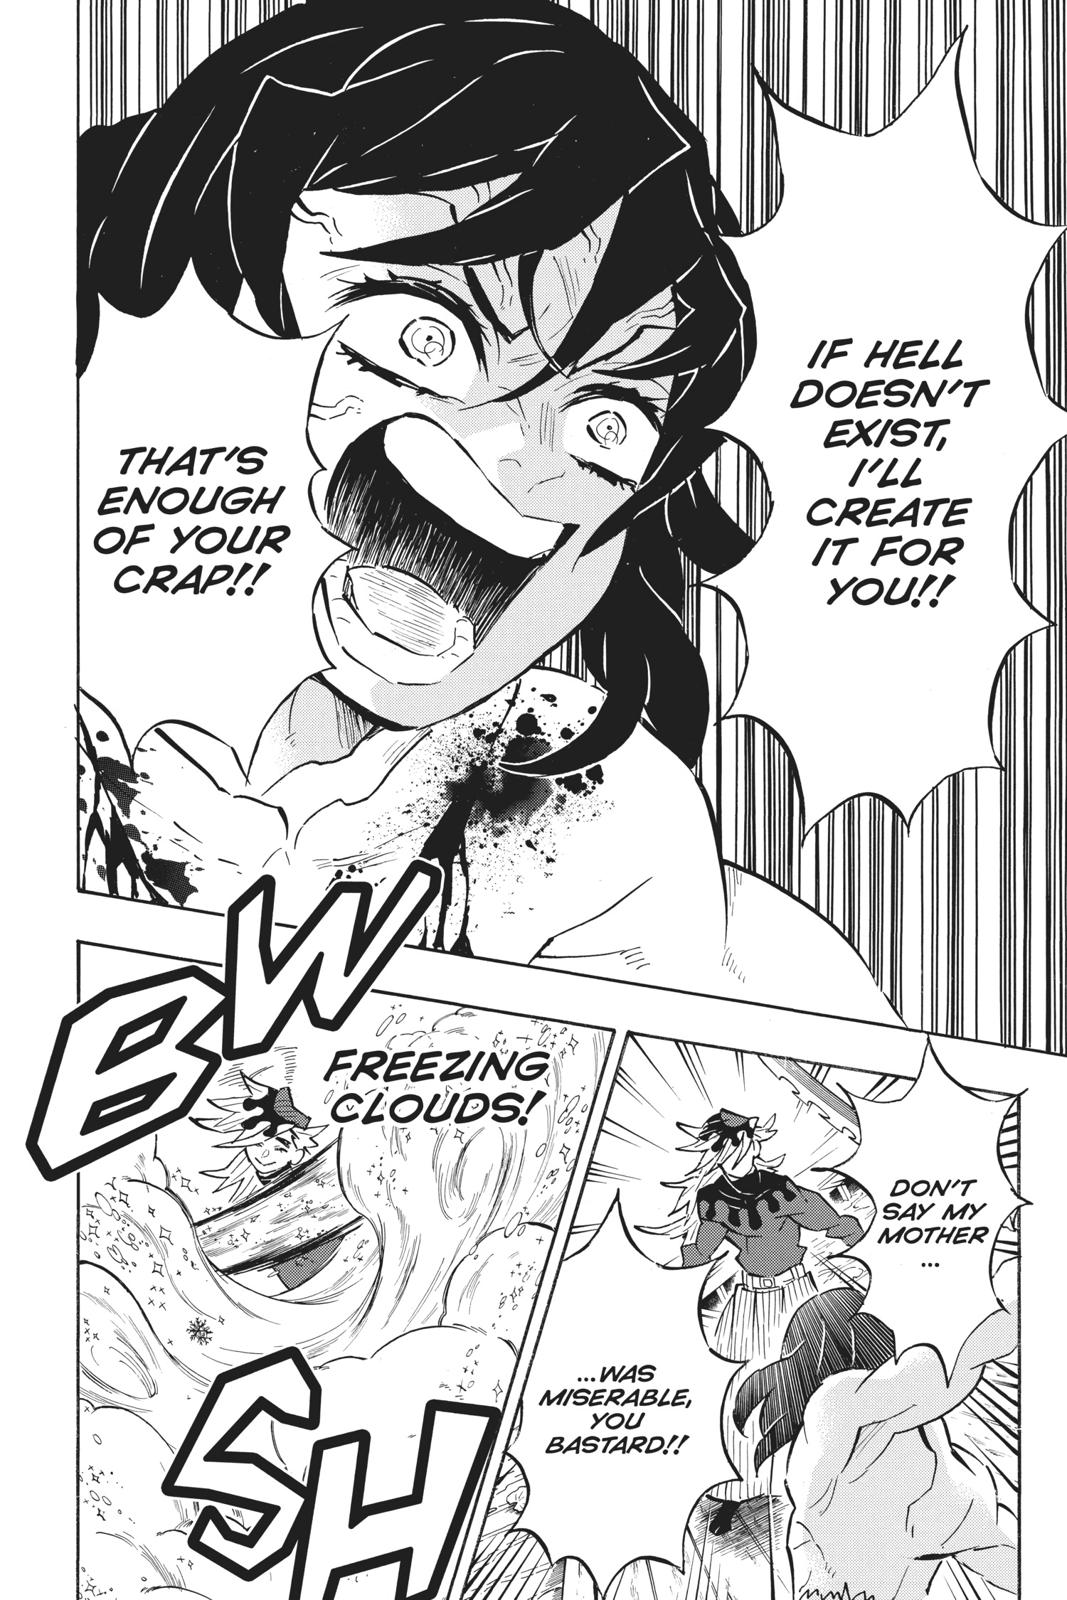 Demon Slayer Manga Manga Chapter - 161 - image 7